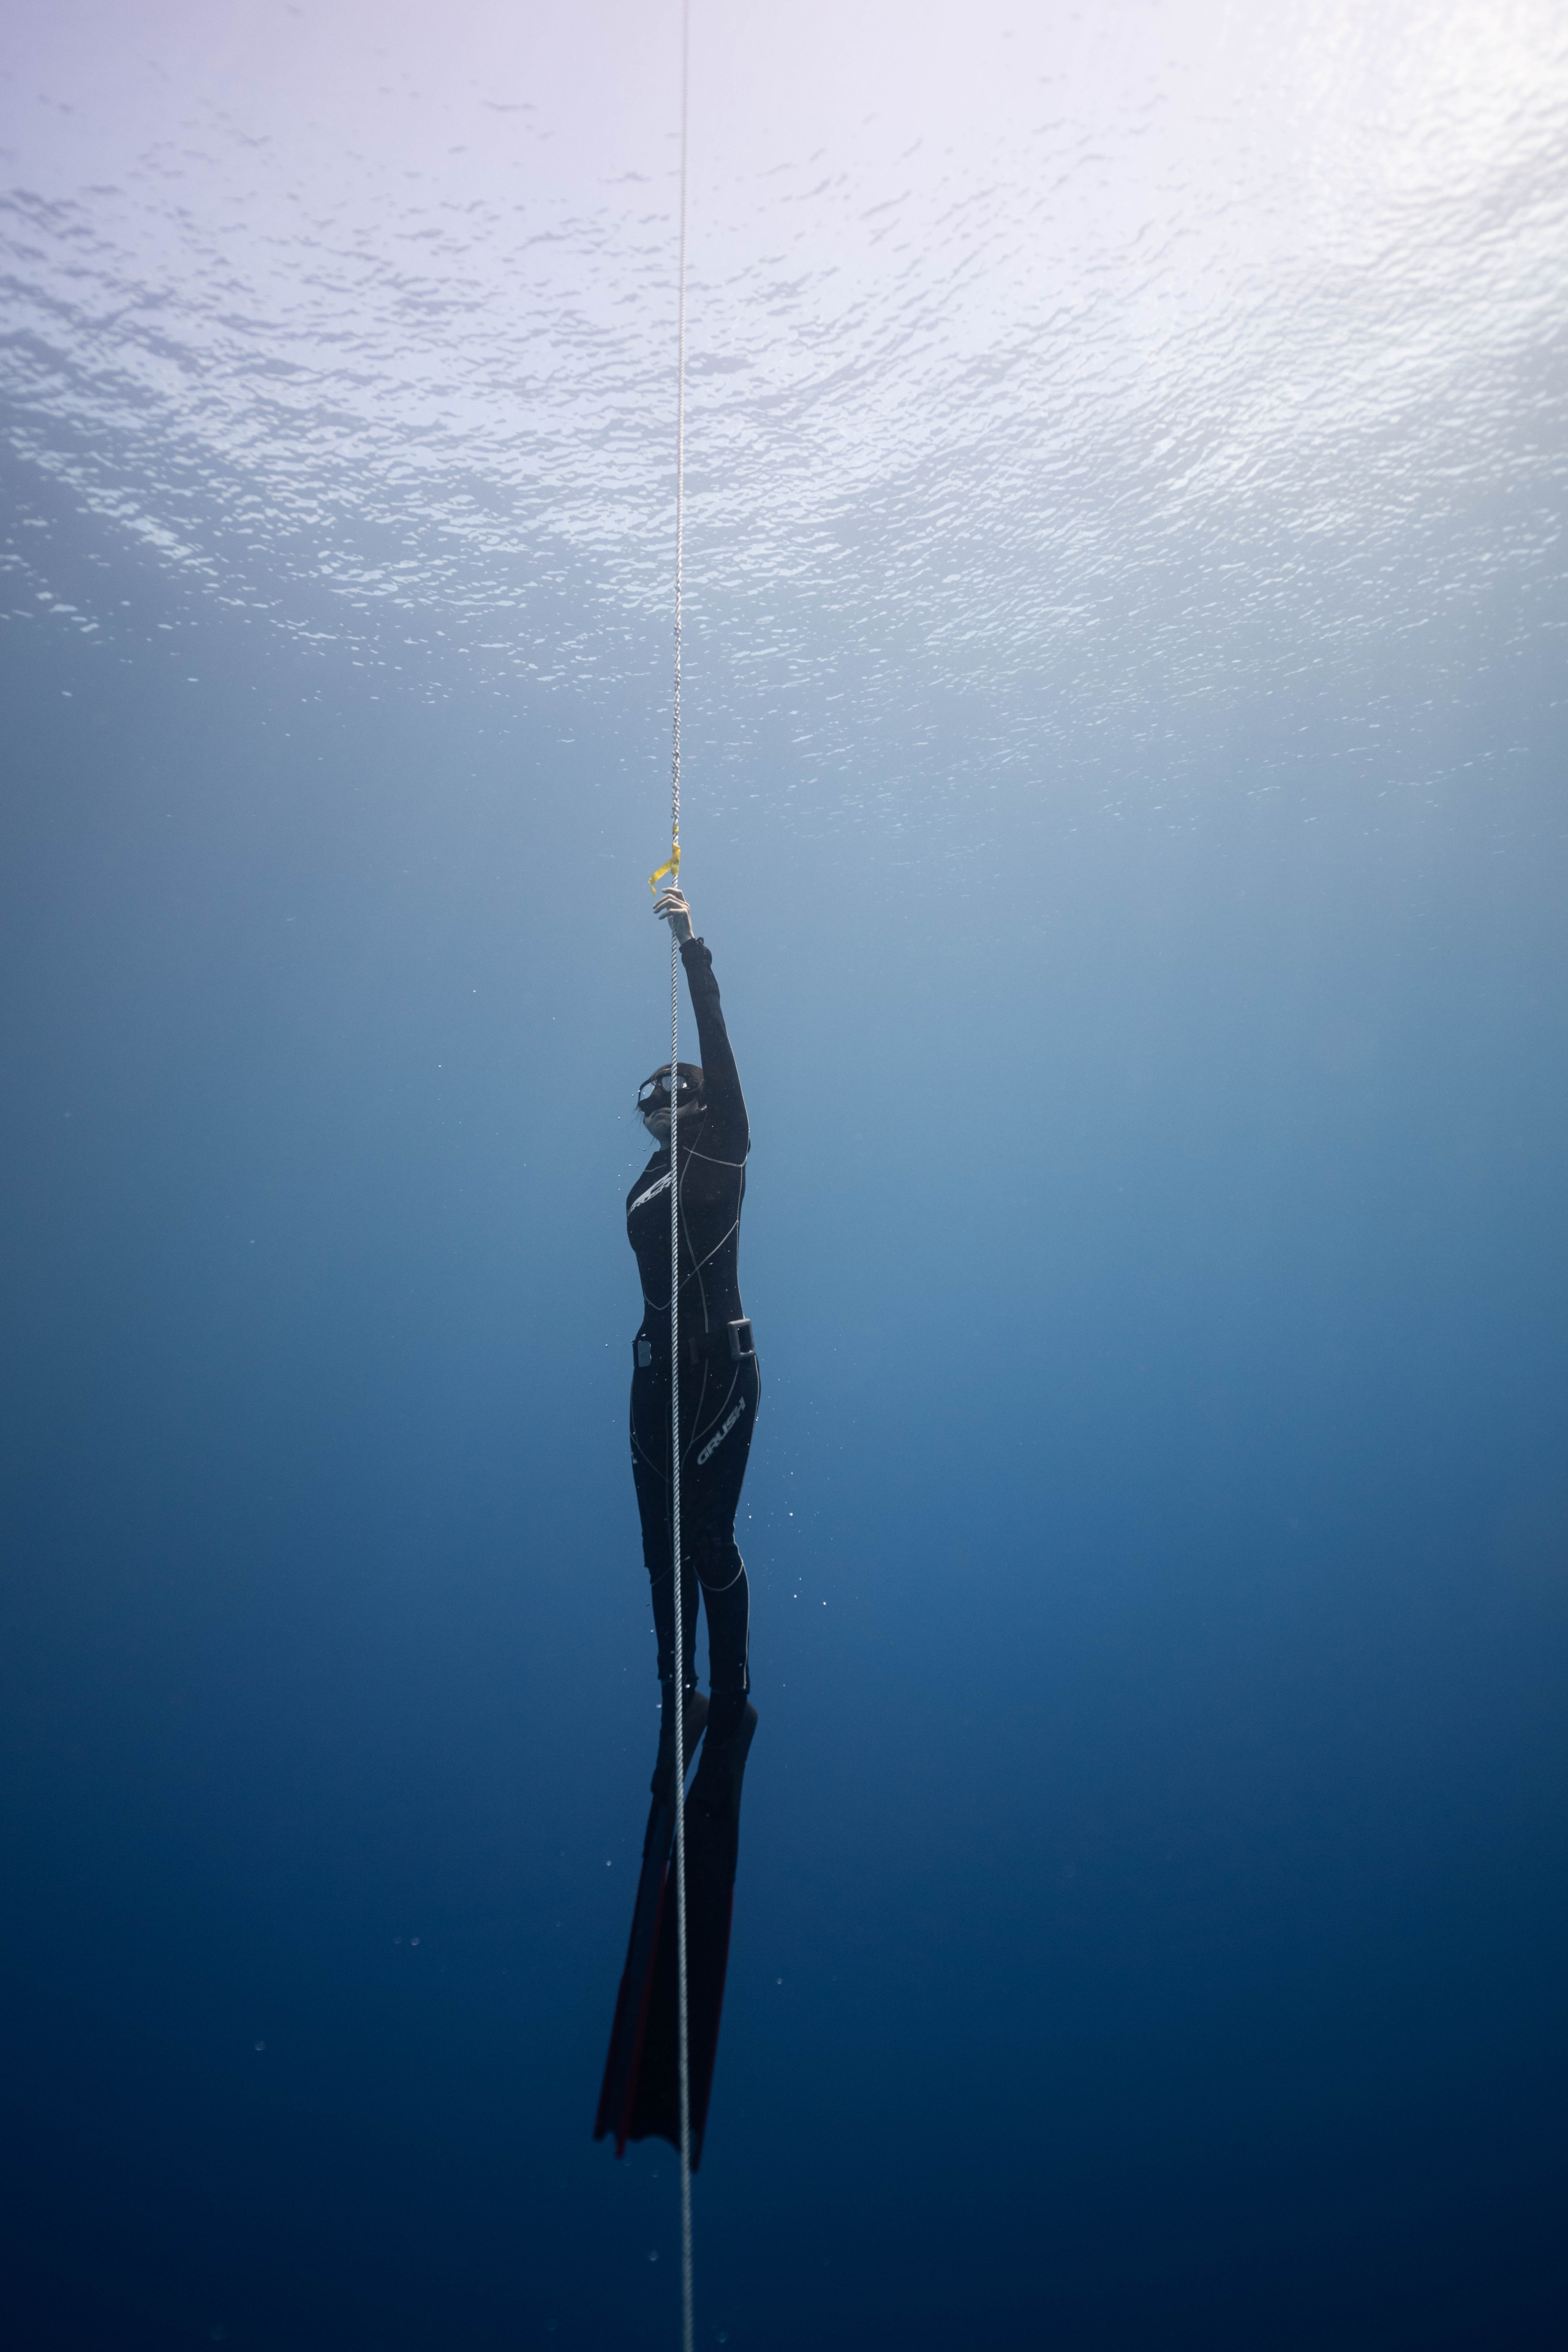 A snorkeler in the deep sea.